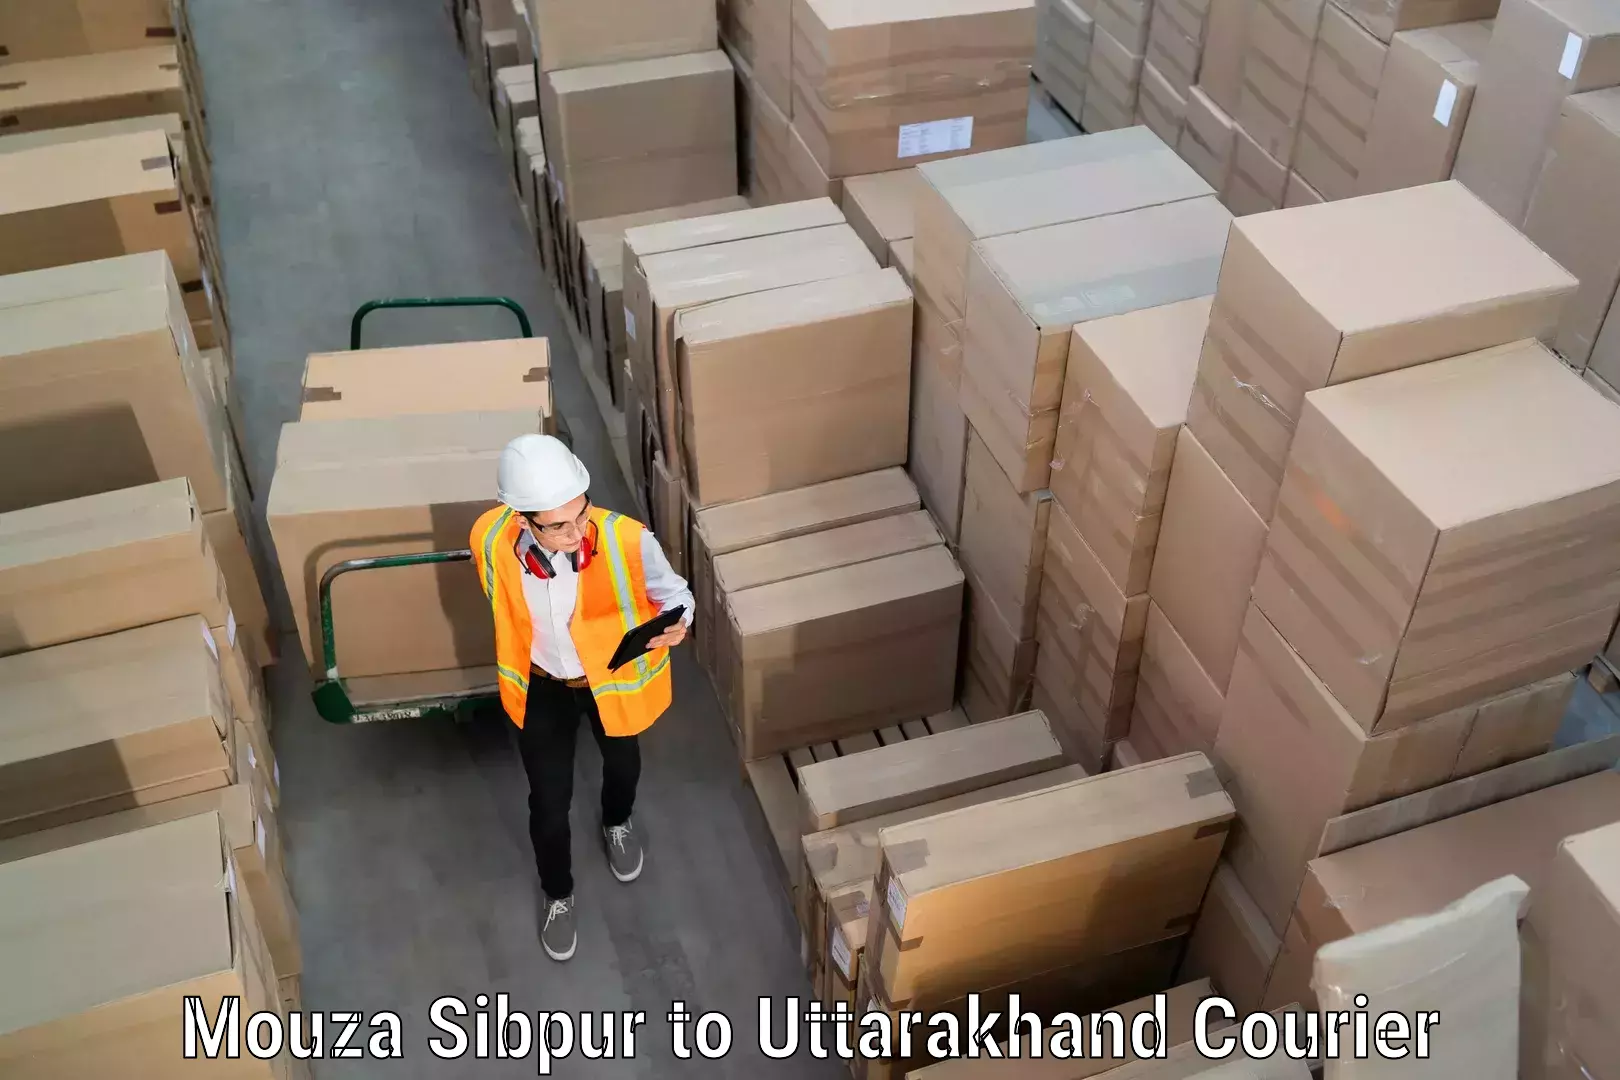 Efficient moving company Mouza Sibpur to Uttarakhand